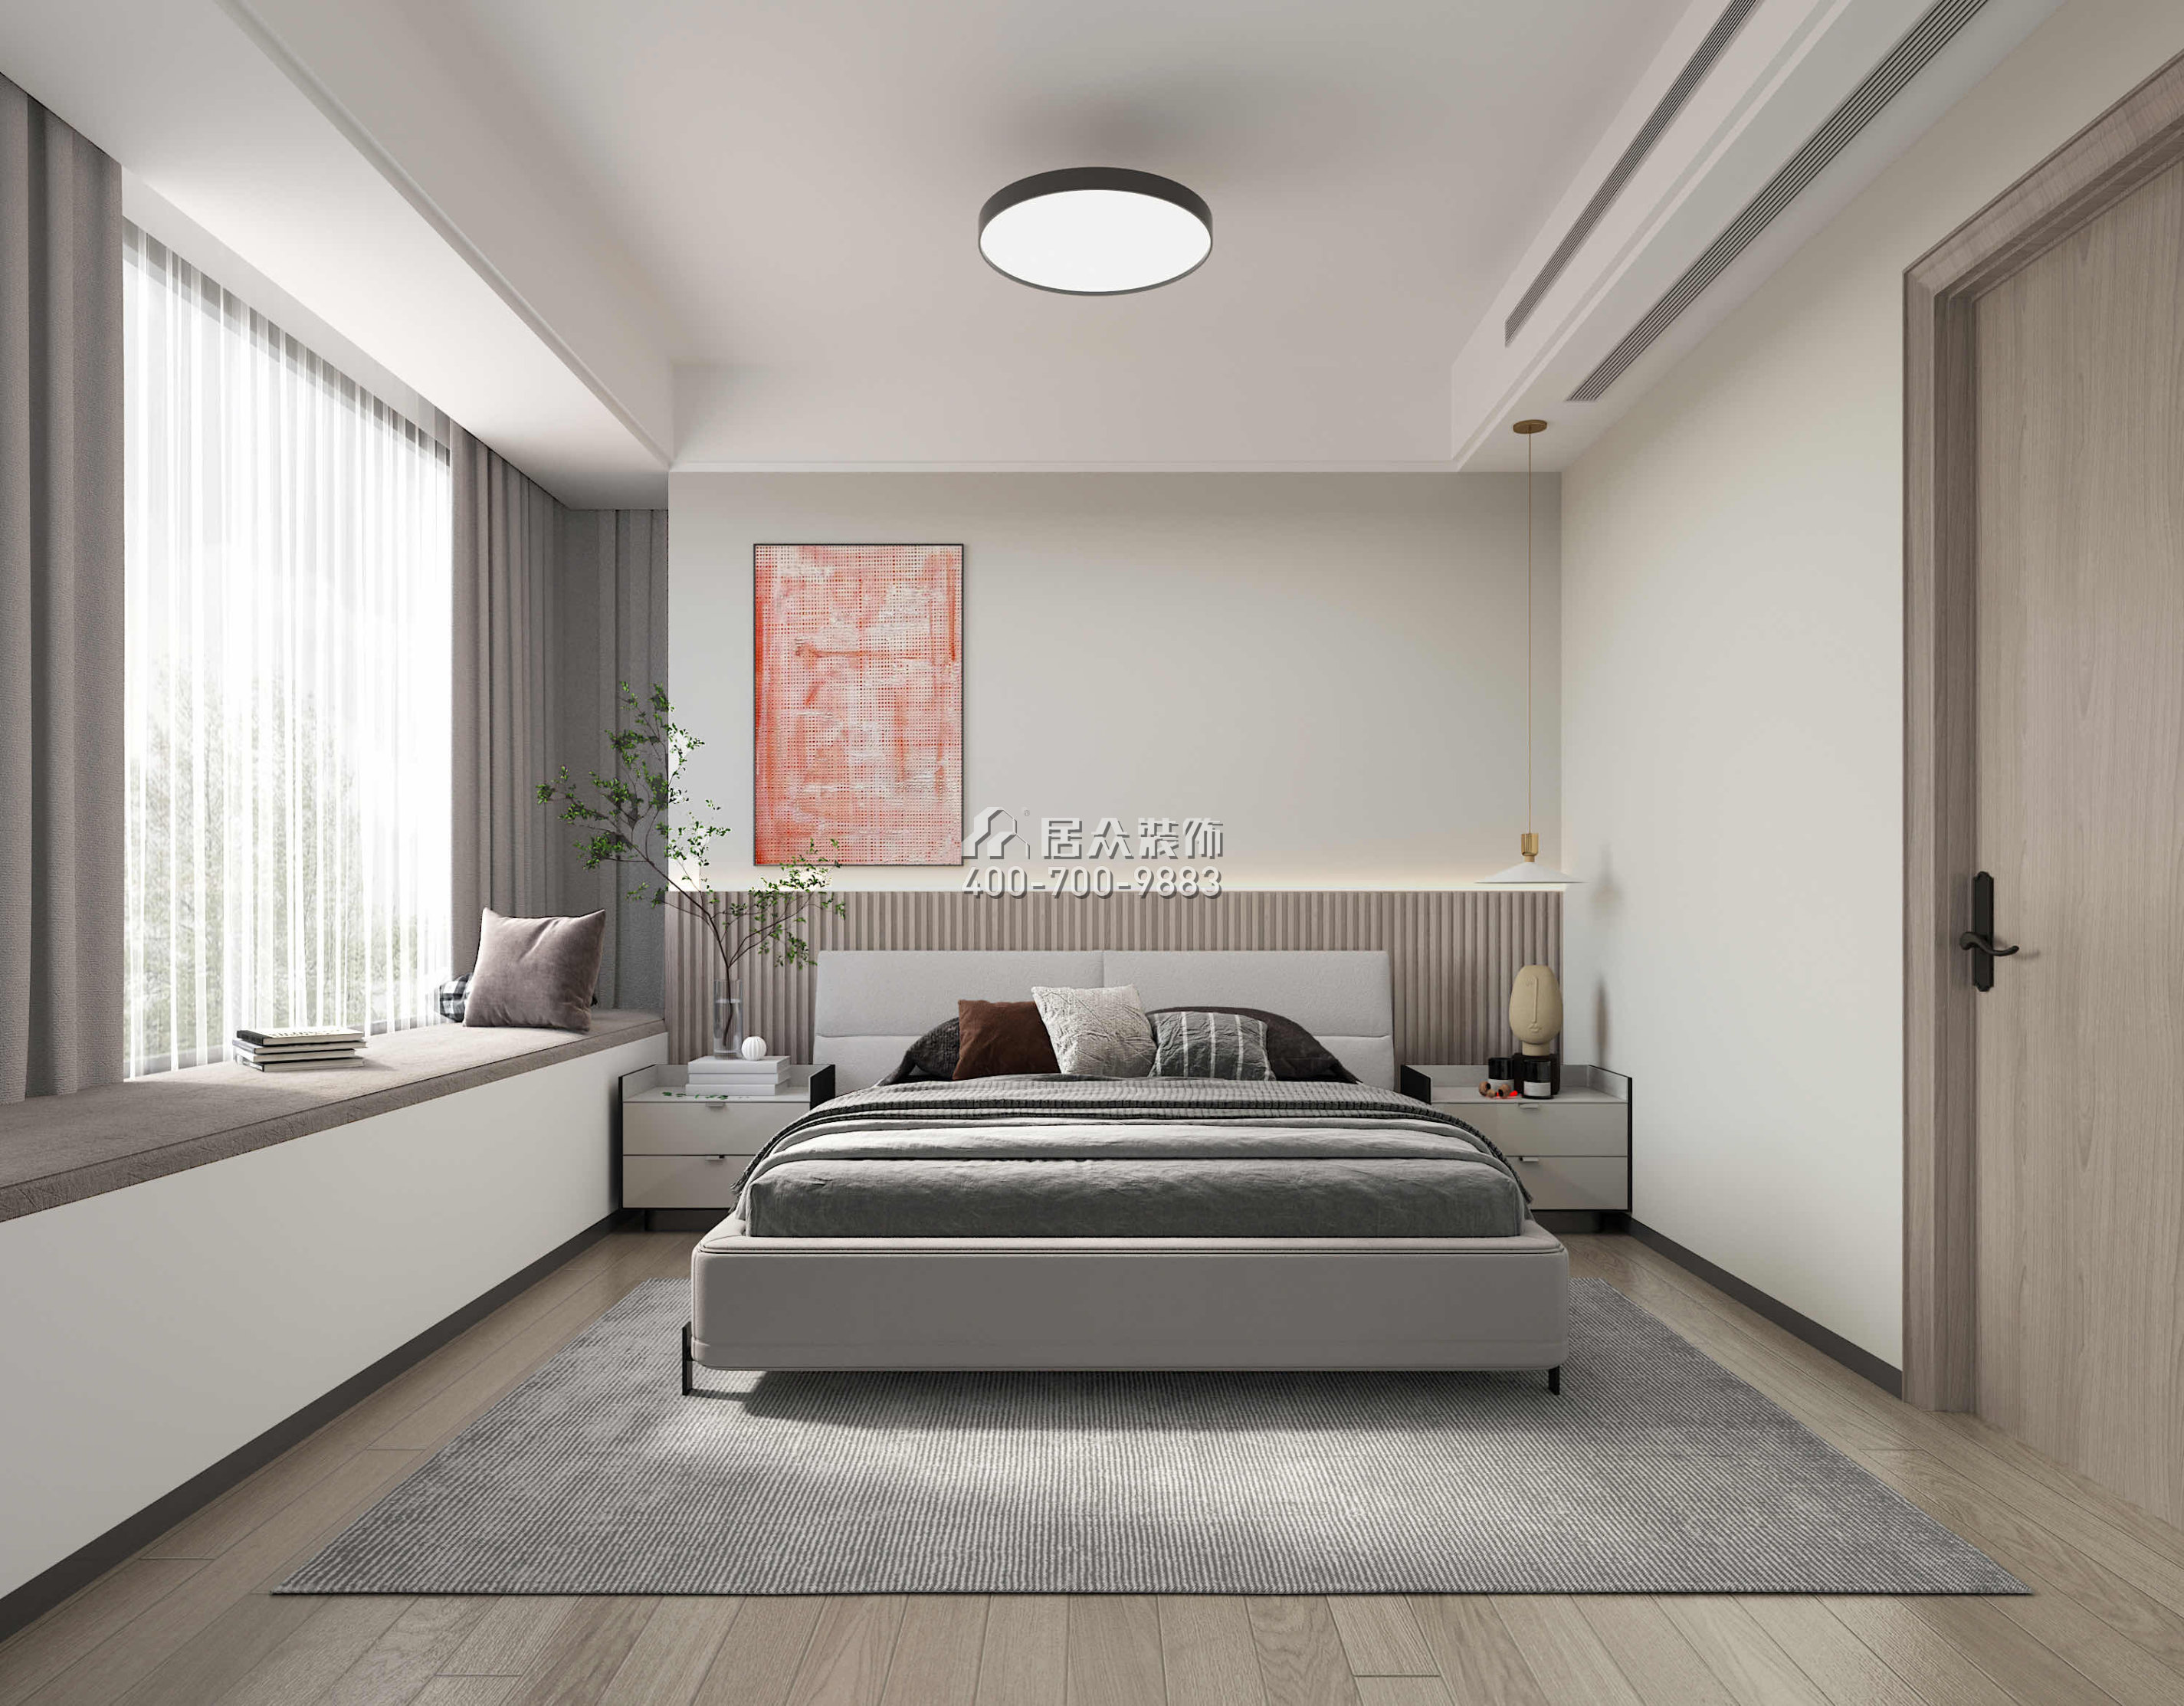 華發綠洋灣168平方米現代簡約風格平層戶型臥室裝修效果圖